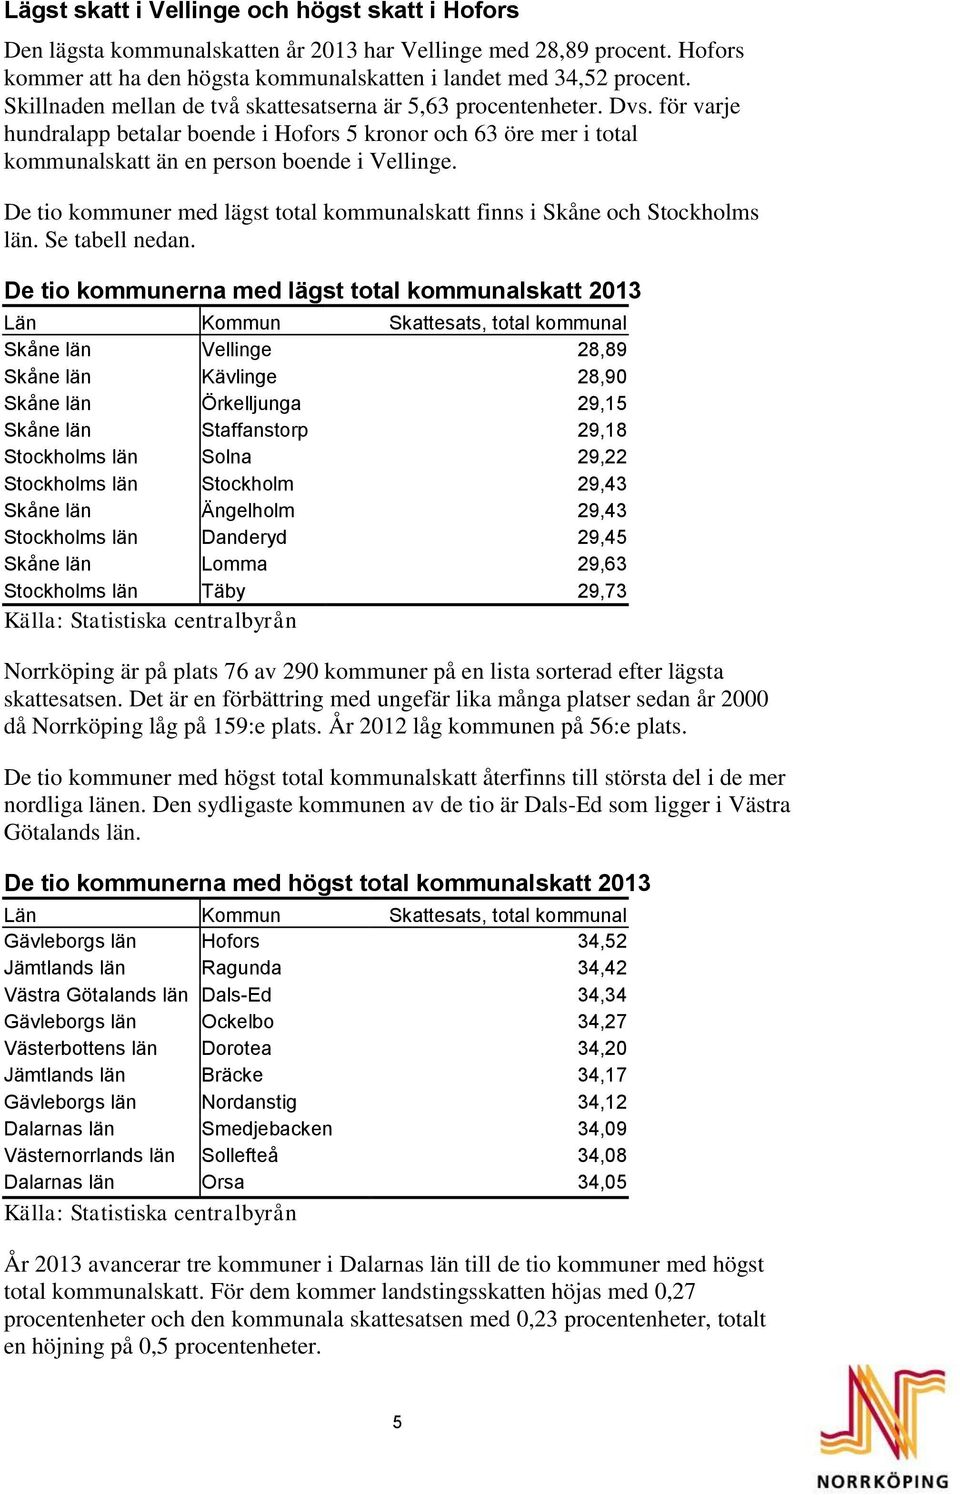 De tio kommuner med lägst total kommunalskatt finns i Skåne och Stockholms län. Se tabell nedan.